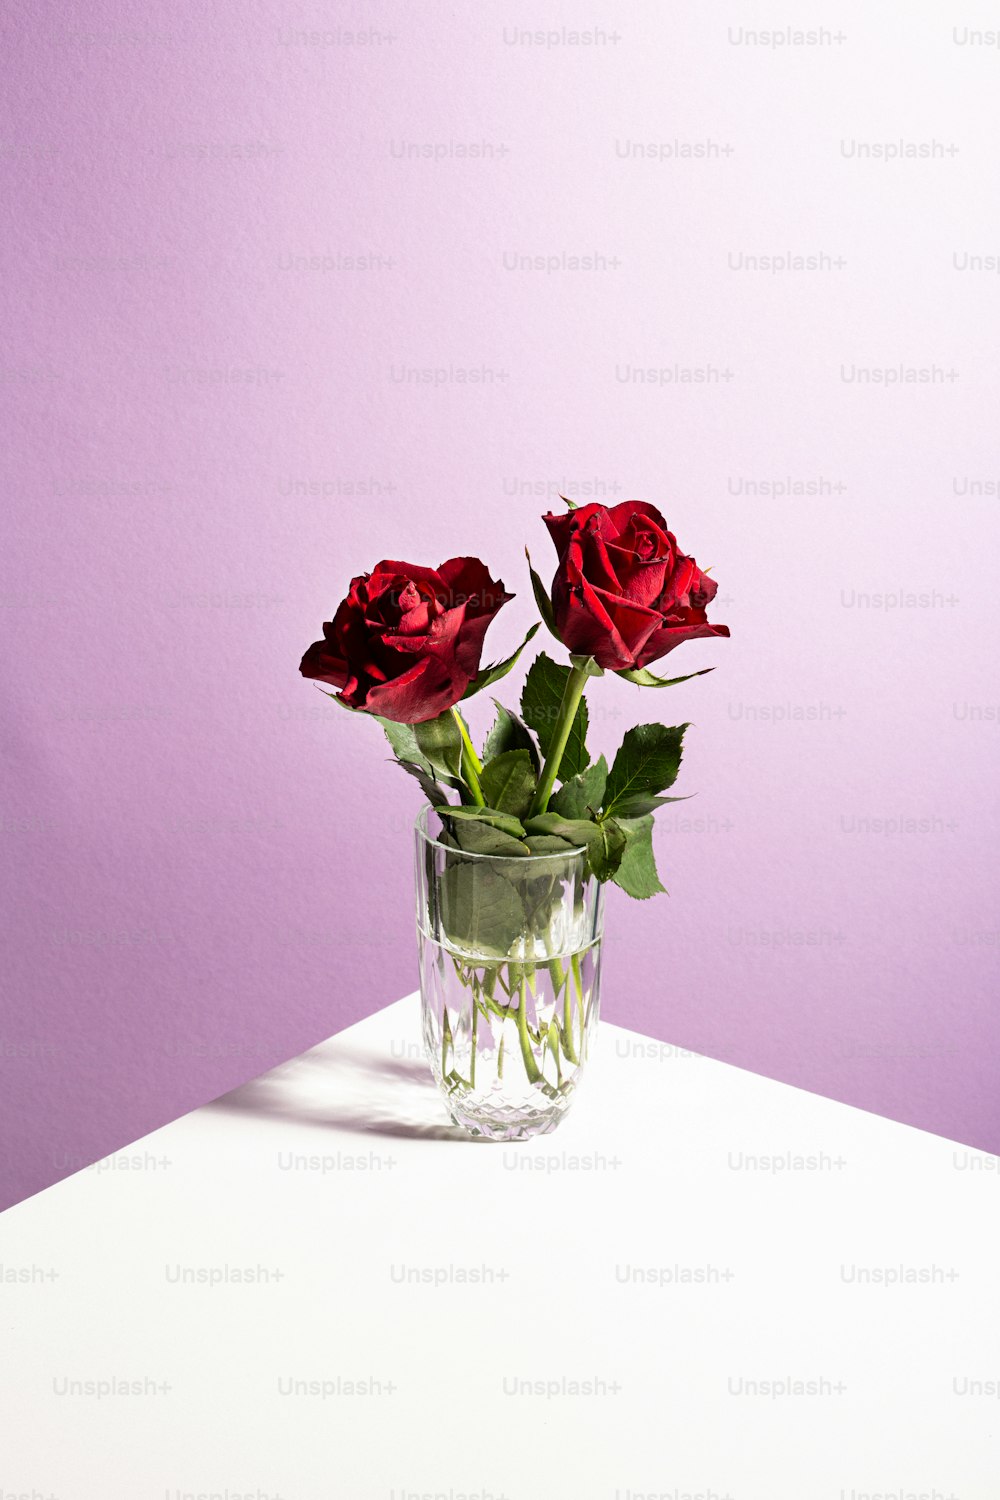 테이블에 유리 꽃병에 두 개의 빨간 장미